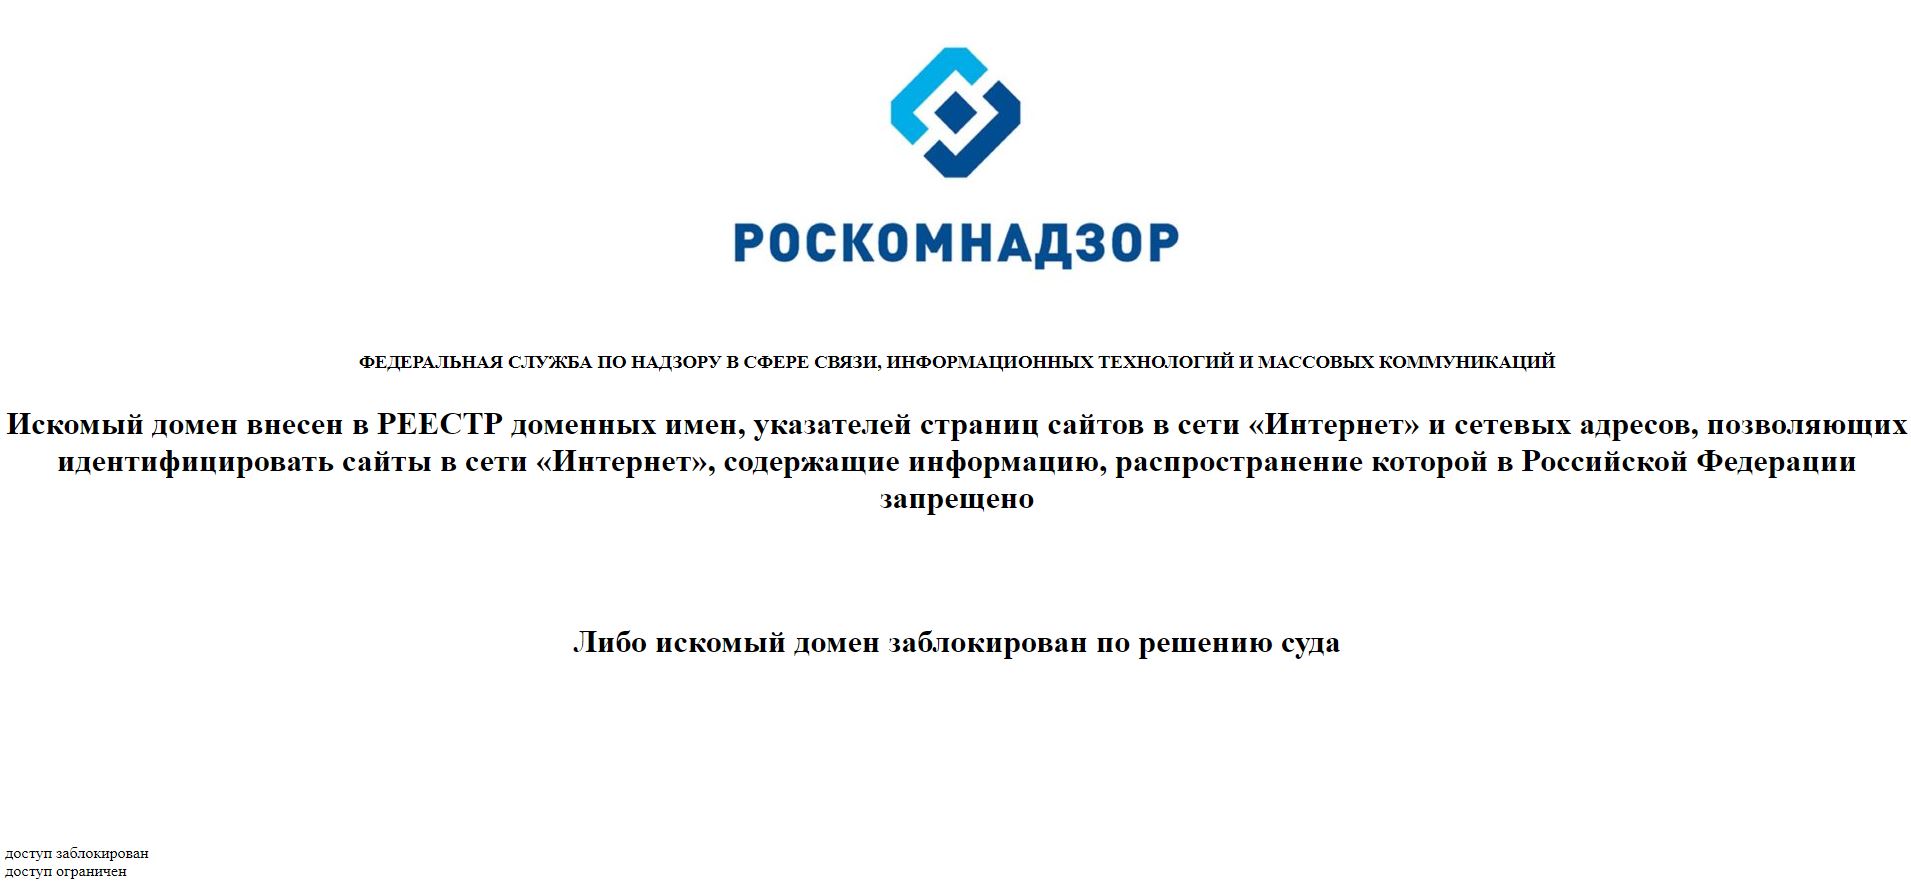 Запрещен ли в россии тор браузер megaruzxpnew4af как в браузер тор установить адобе флеш плеер mega вход